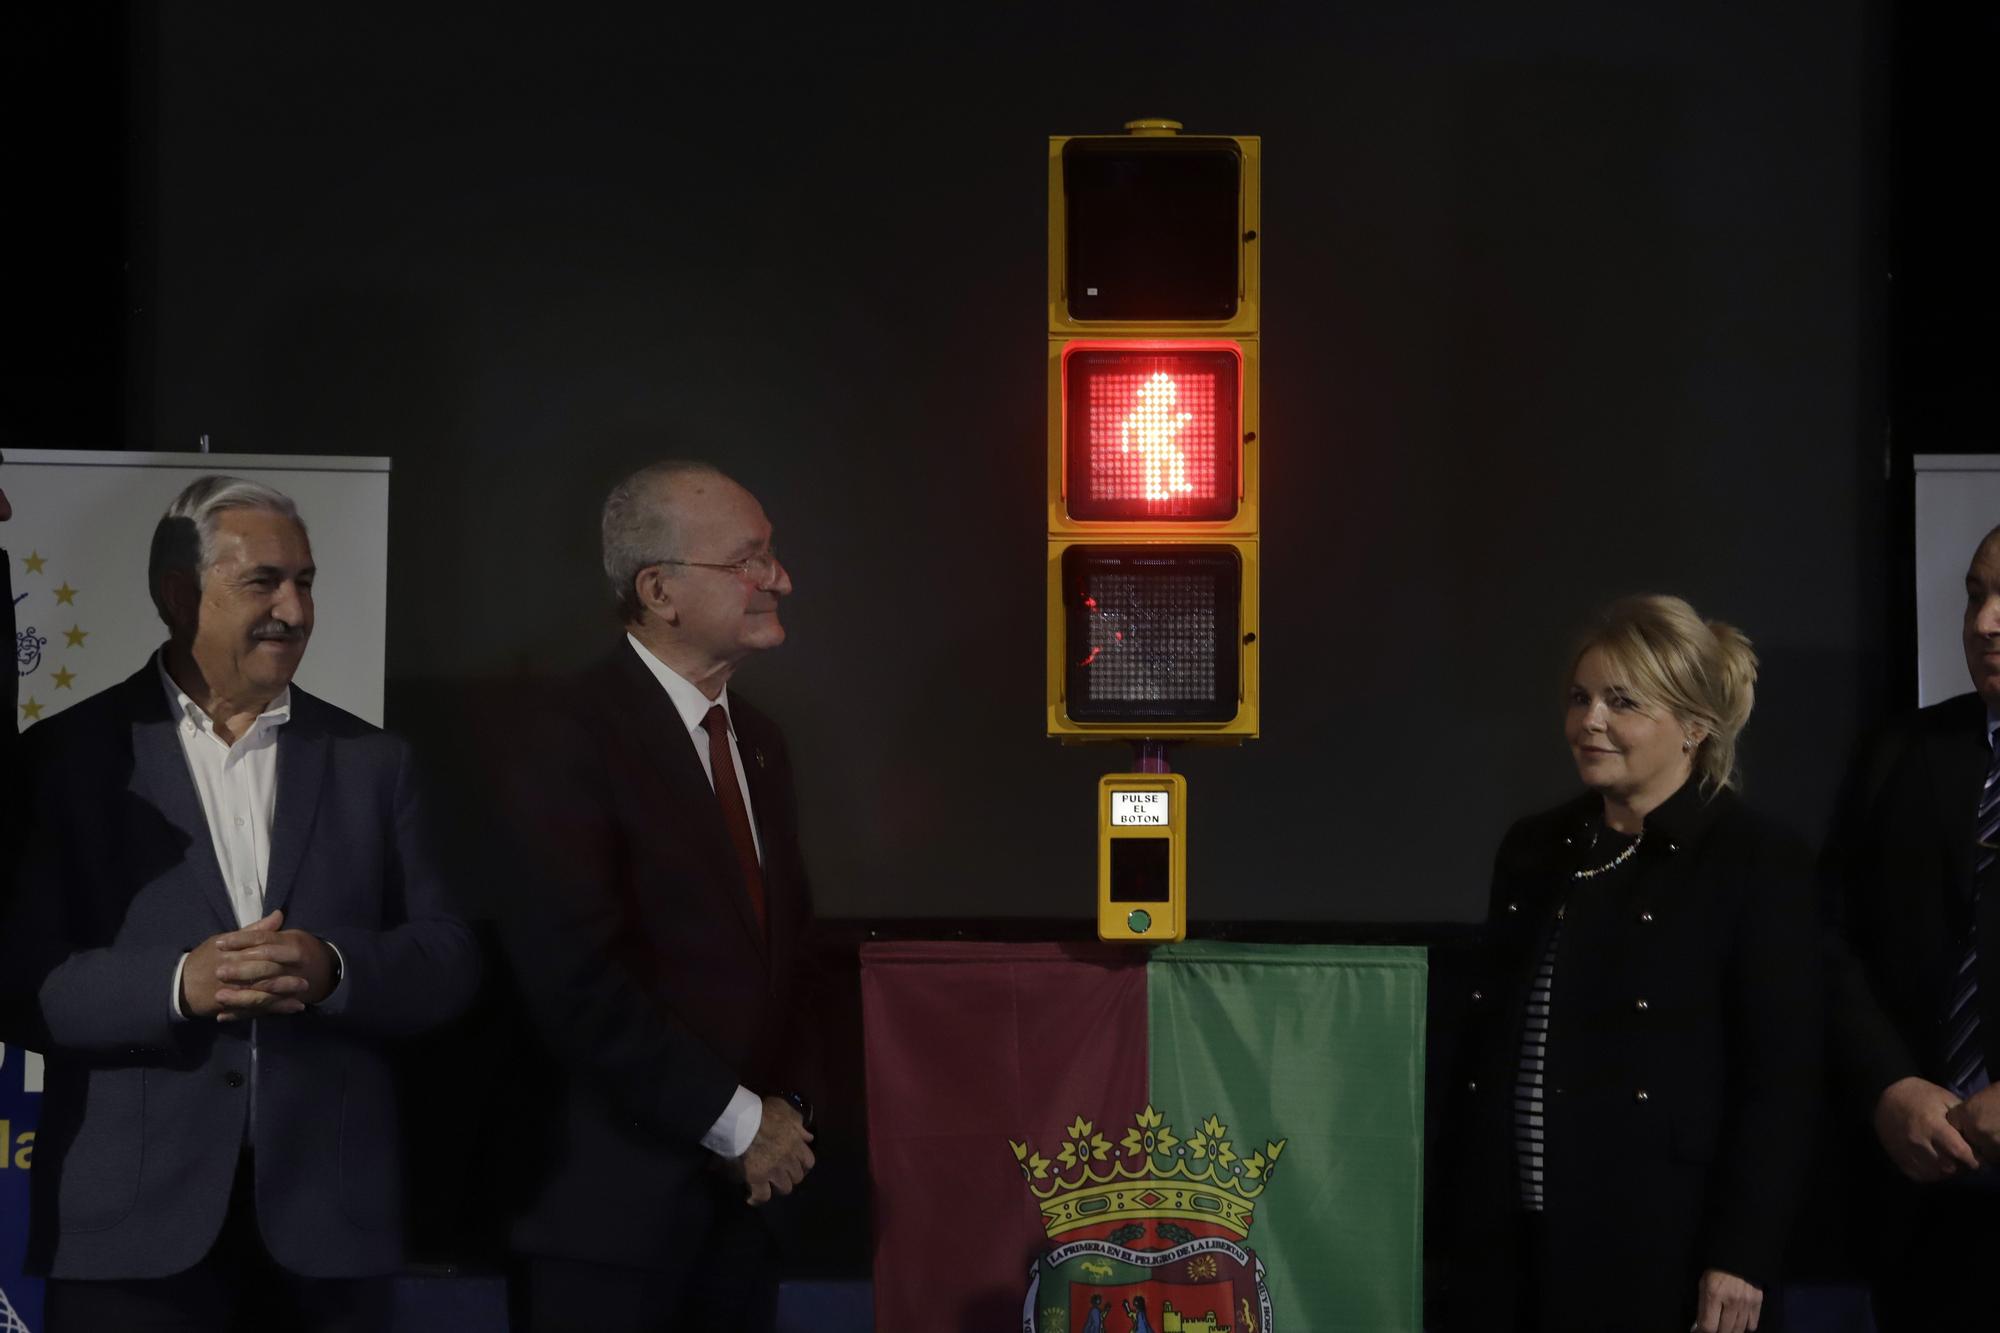 Nuevo semáforo de Chiquito de la Calzada en Málaga